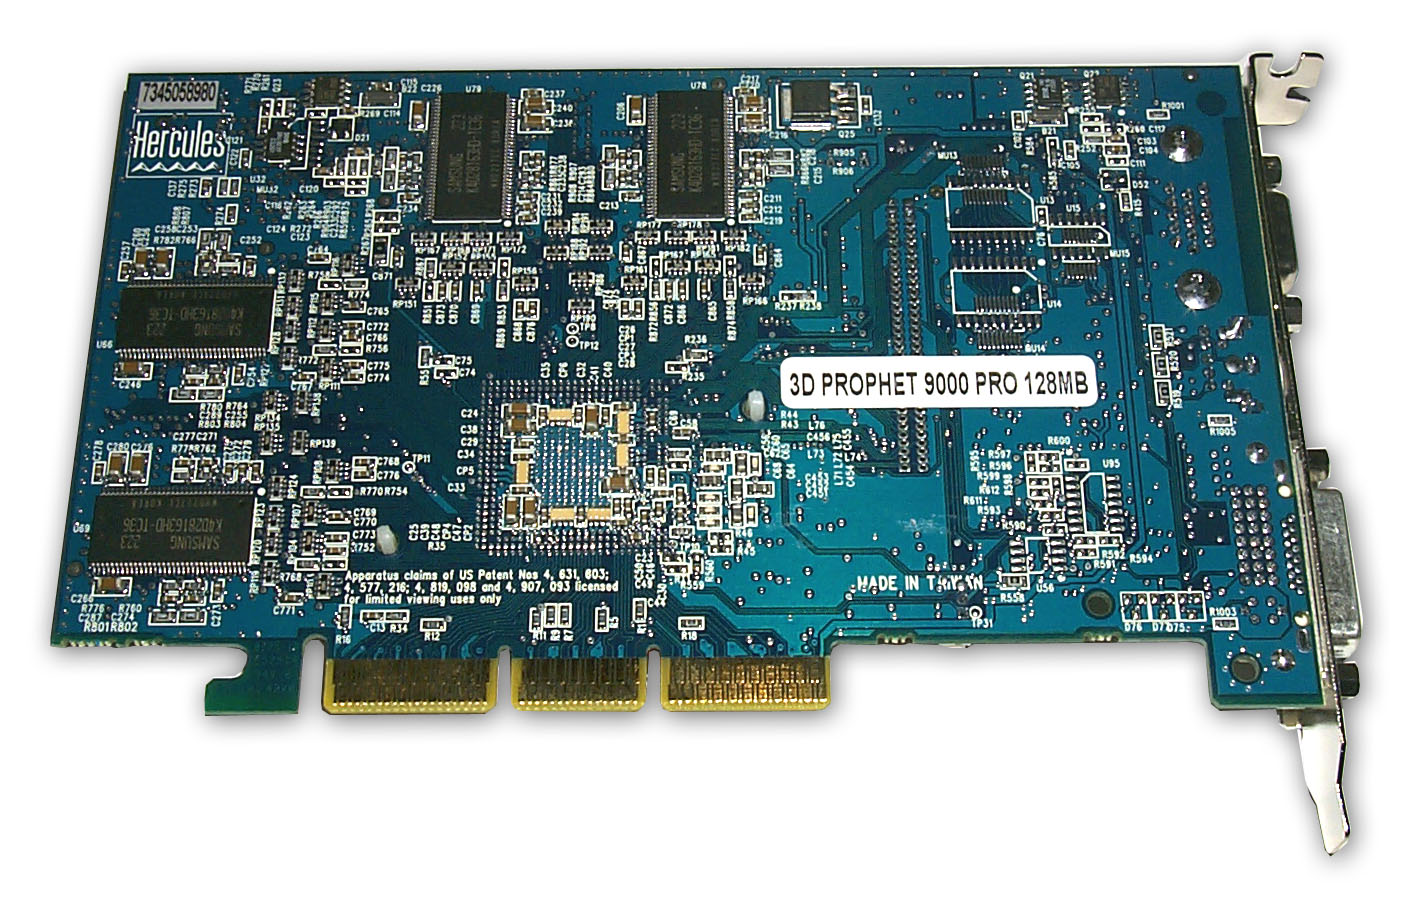 Ati radeon pro драйвера. ATI Radeon 9000 Pro. ATI Mobility Radeon 9000 IGP. ATI Radeon 9000 Pro Mac. 9800 128 MB VGA Card.